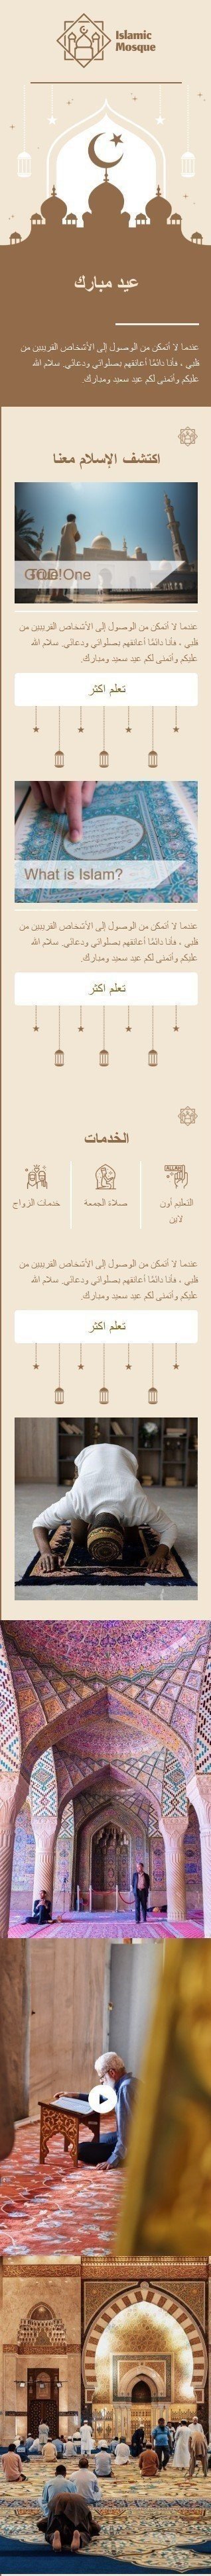 Modello Email Kurban Bayrami «Moschea islamica» per il settore industriale di No profit e beneficenza Visualizzazione mobile